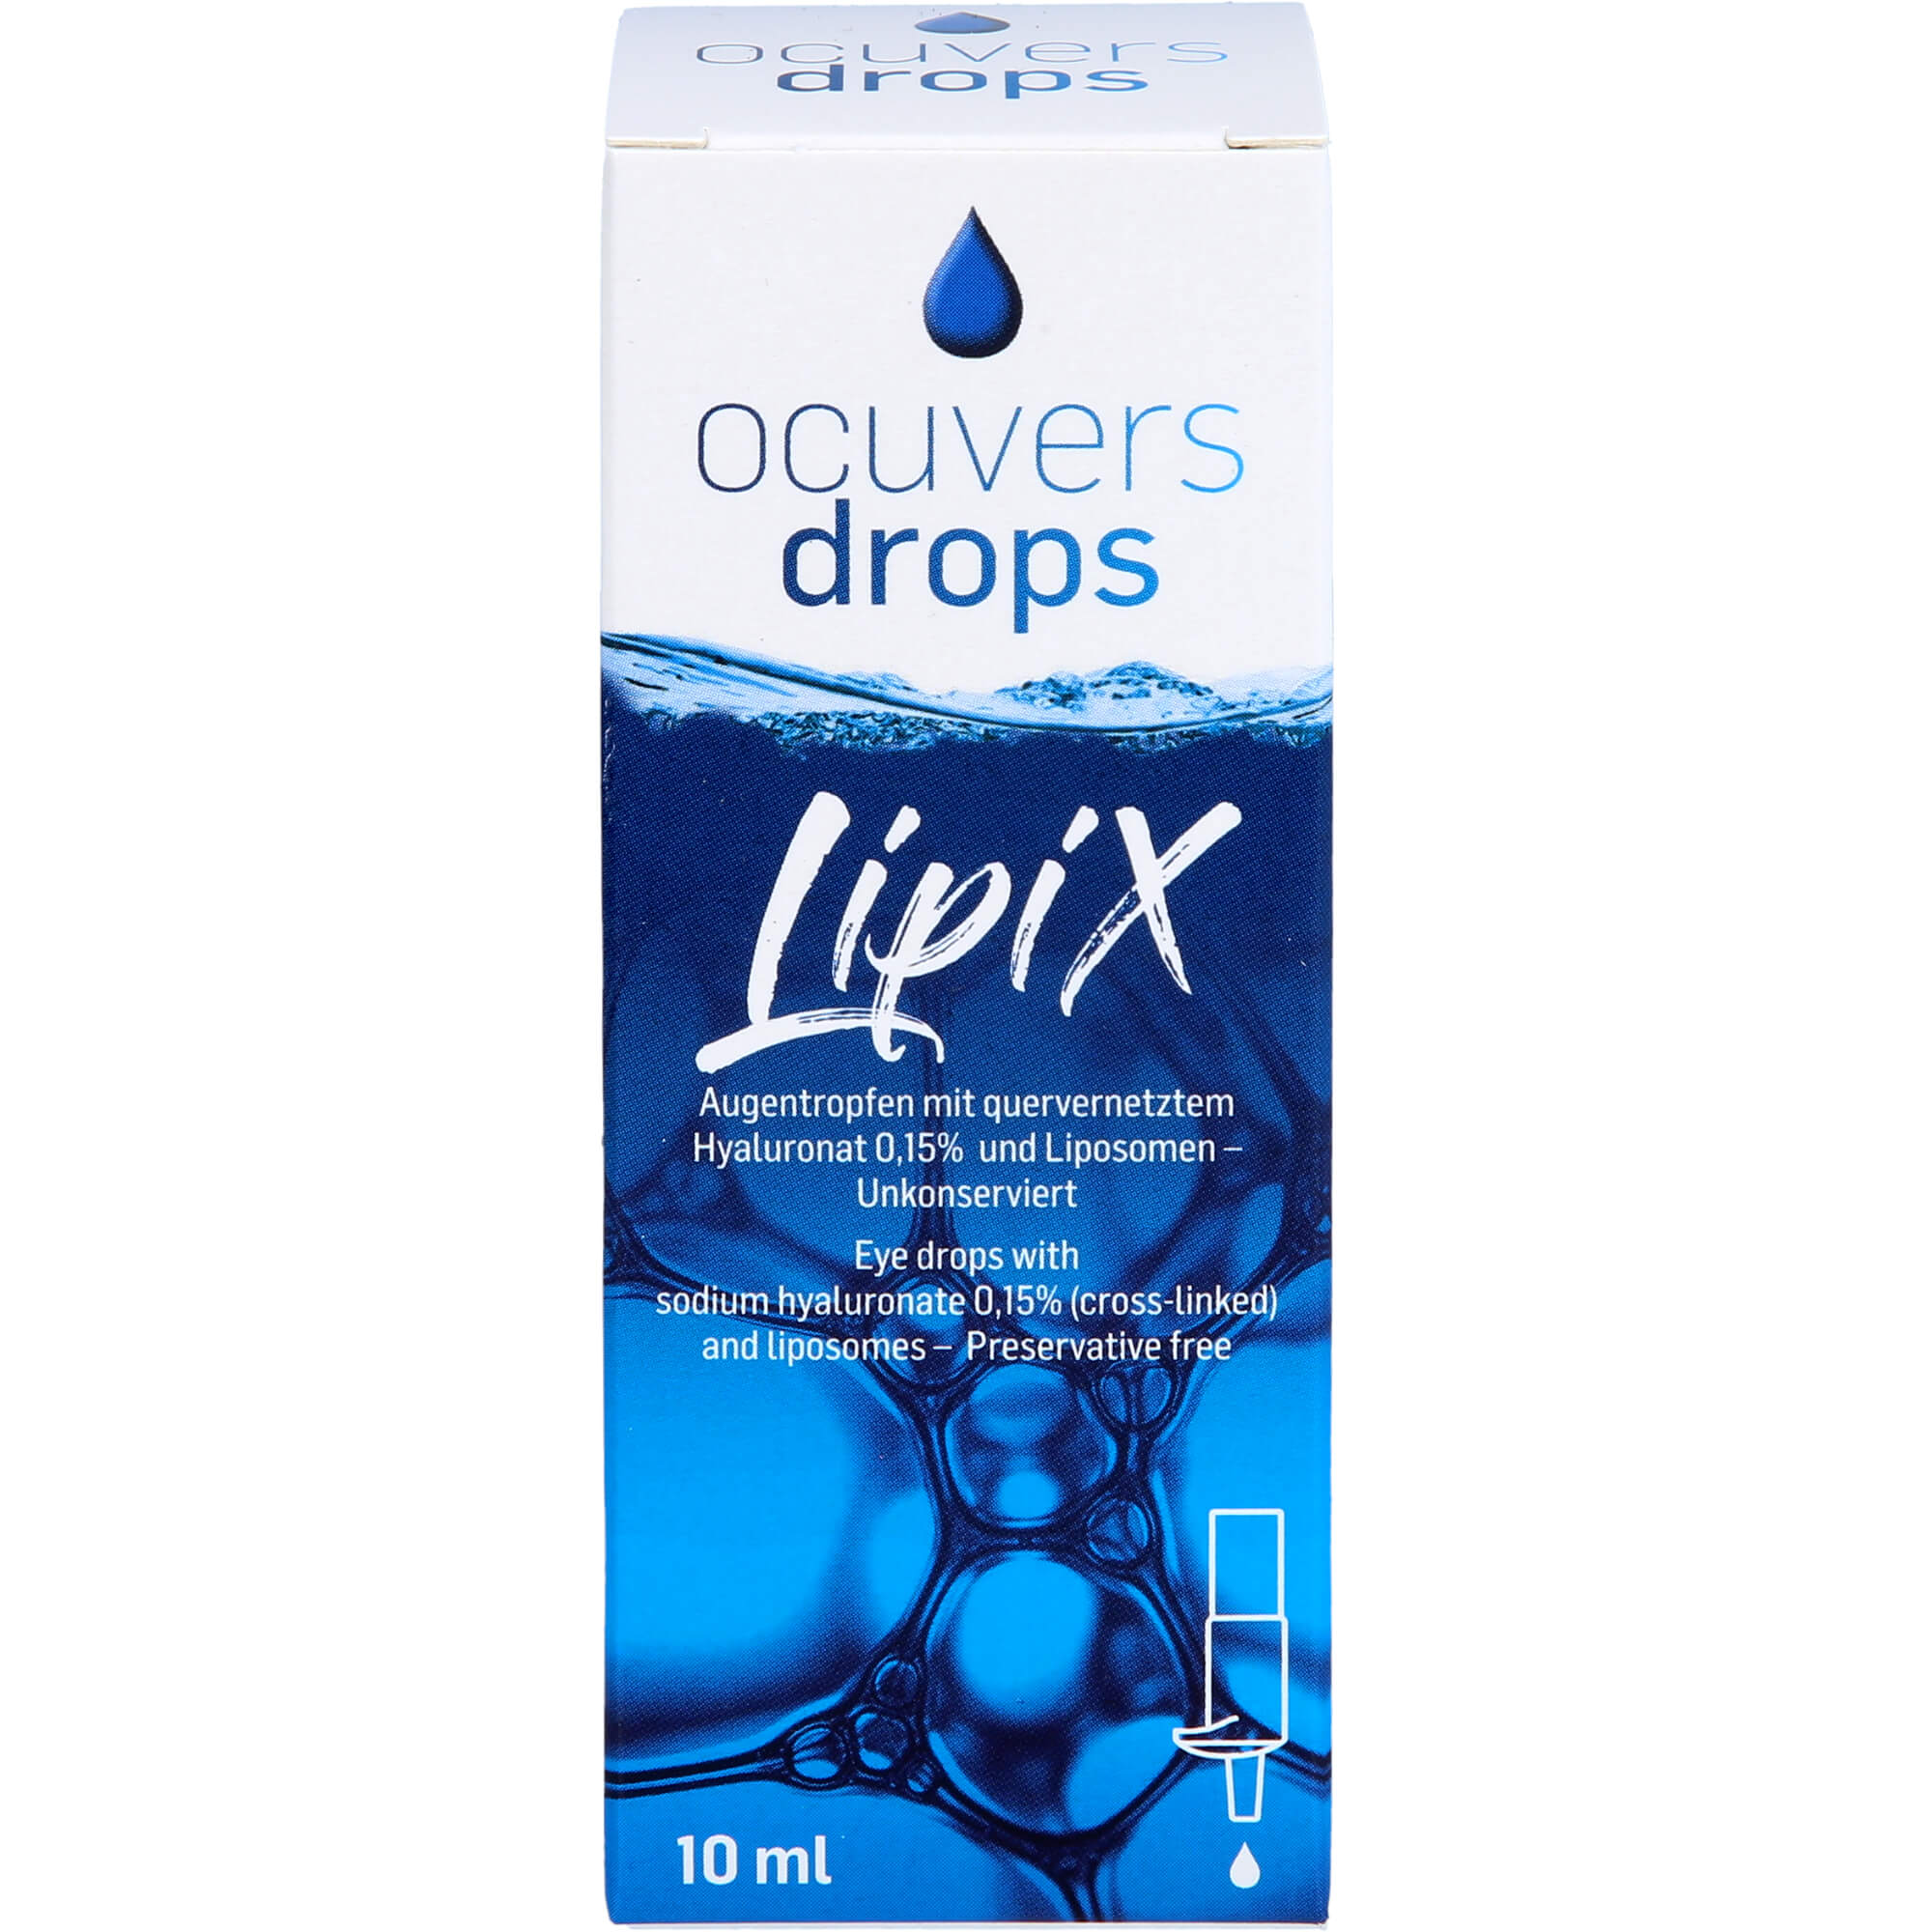 OCUVERS drops LipiX Augentropfen